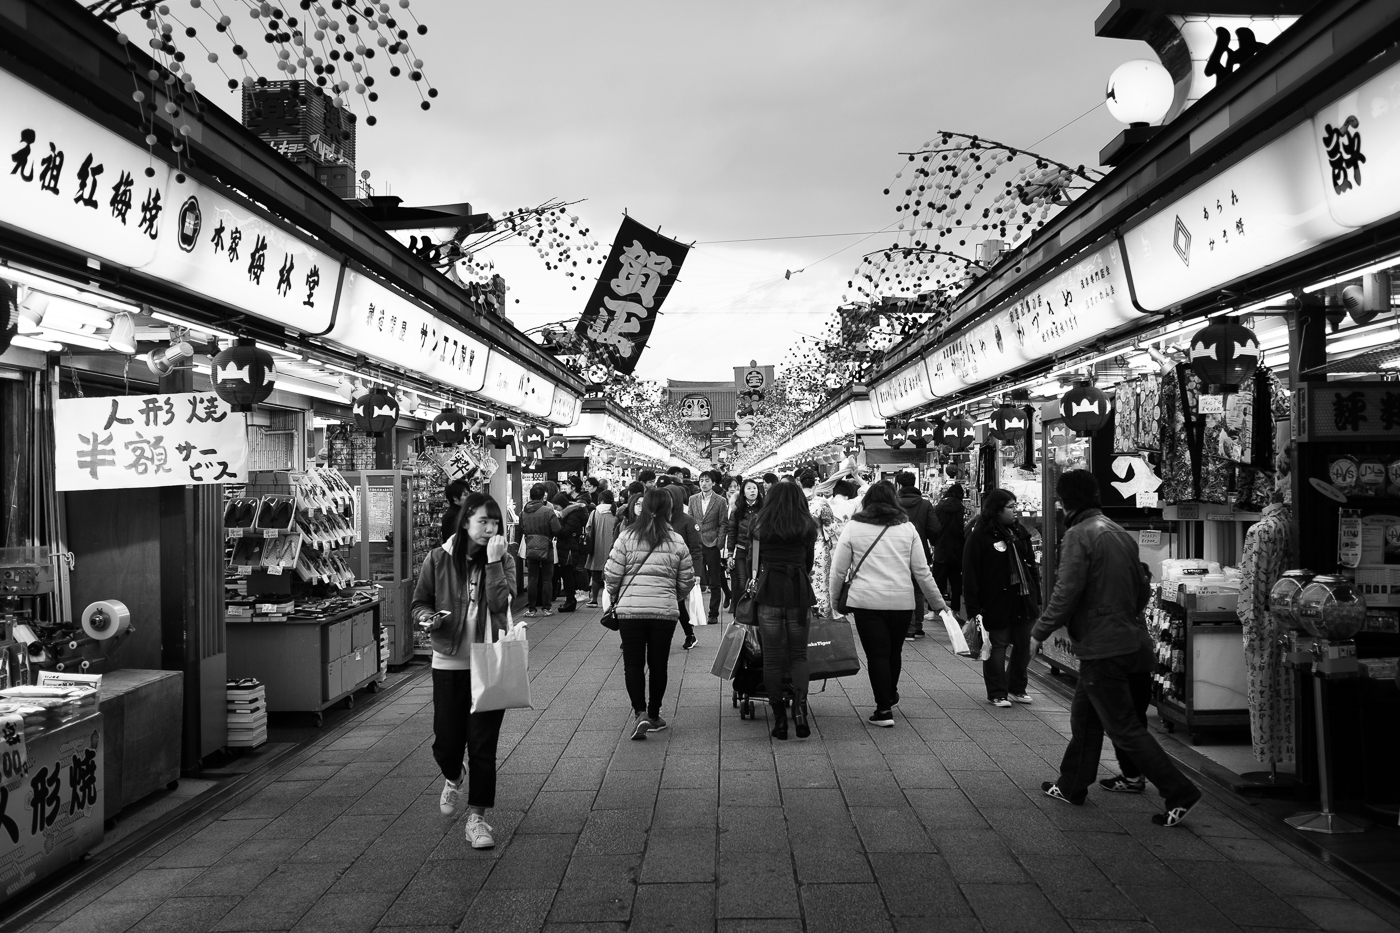 Rue marchande d'Asakusa, en noir et blanc